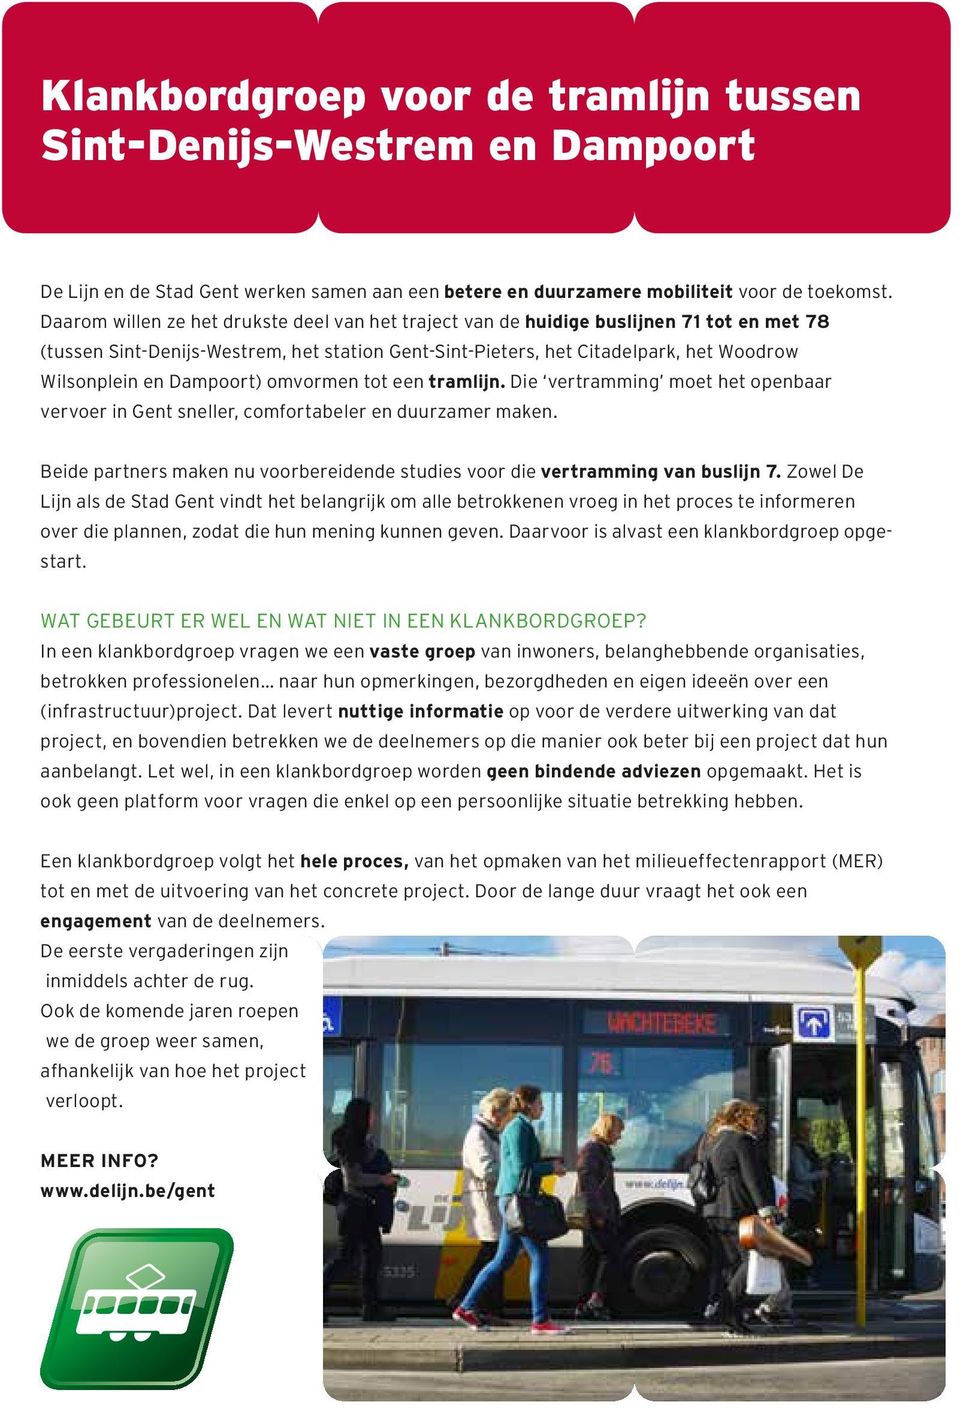 Dampoort) omvormen tot een tramlijn. Die vertramming moet het openbaar vervoer in Gent sneller, comfortabeler en duurzamer maken.